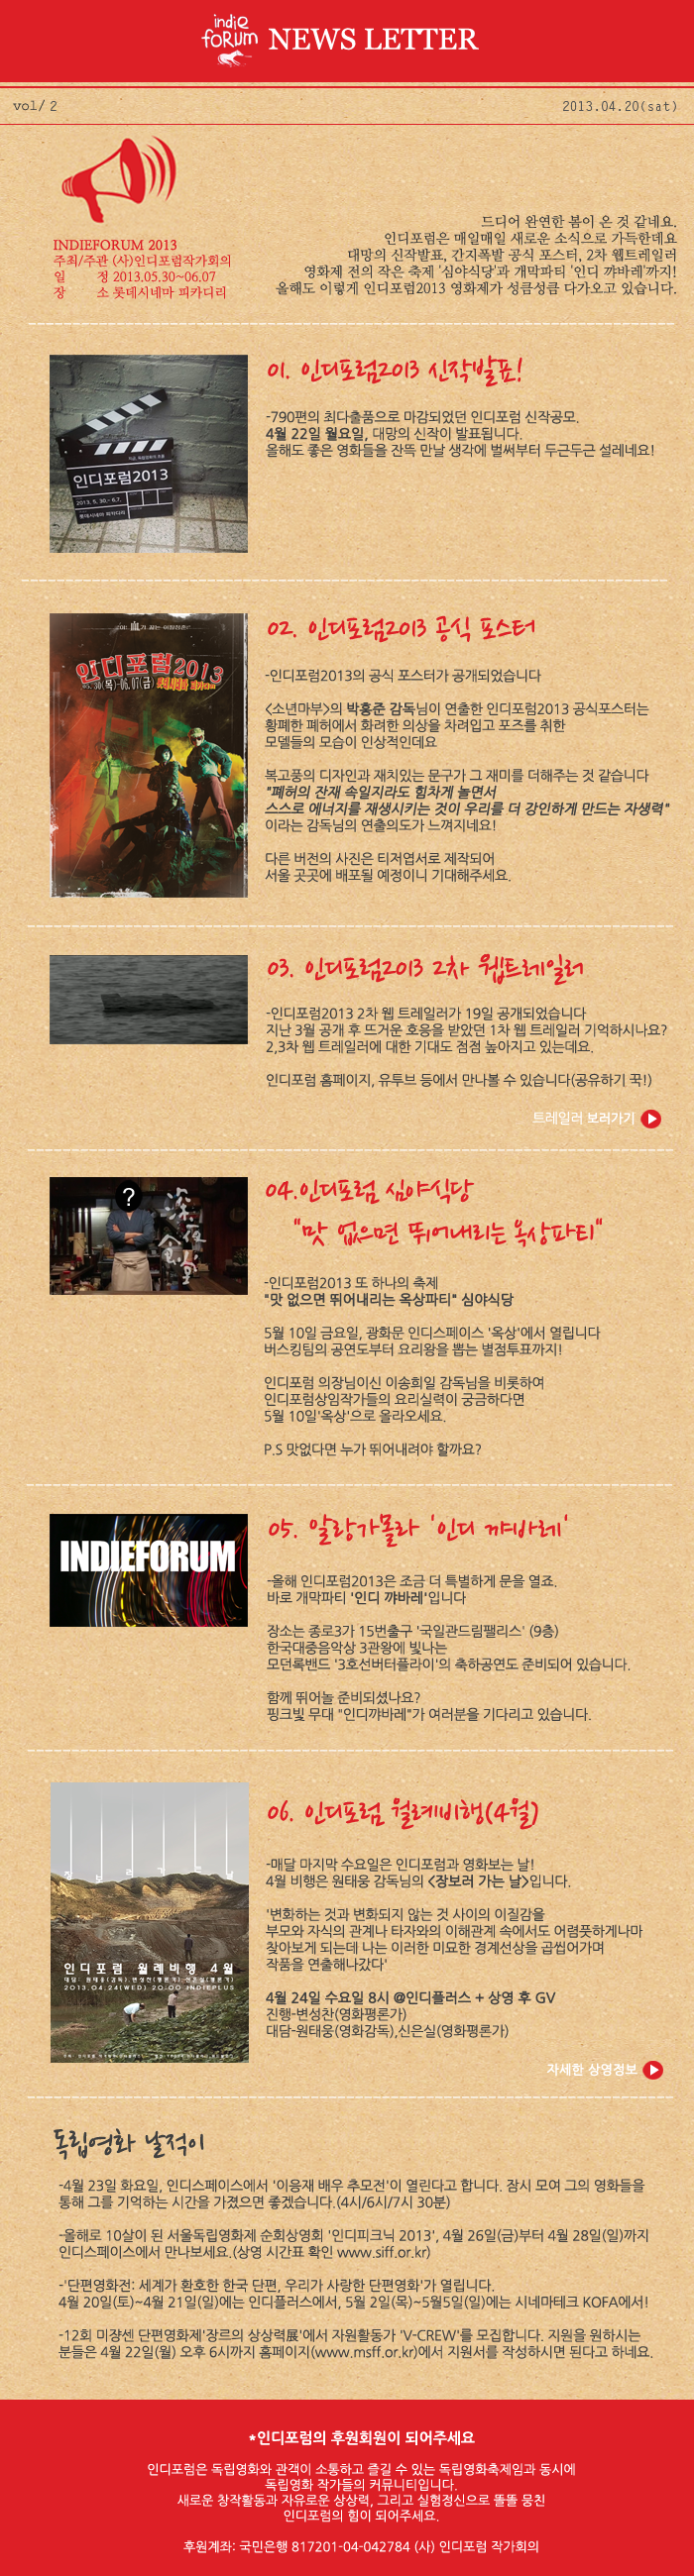 indieforum2013_newsletter_2.png